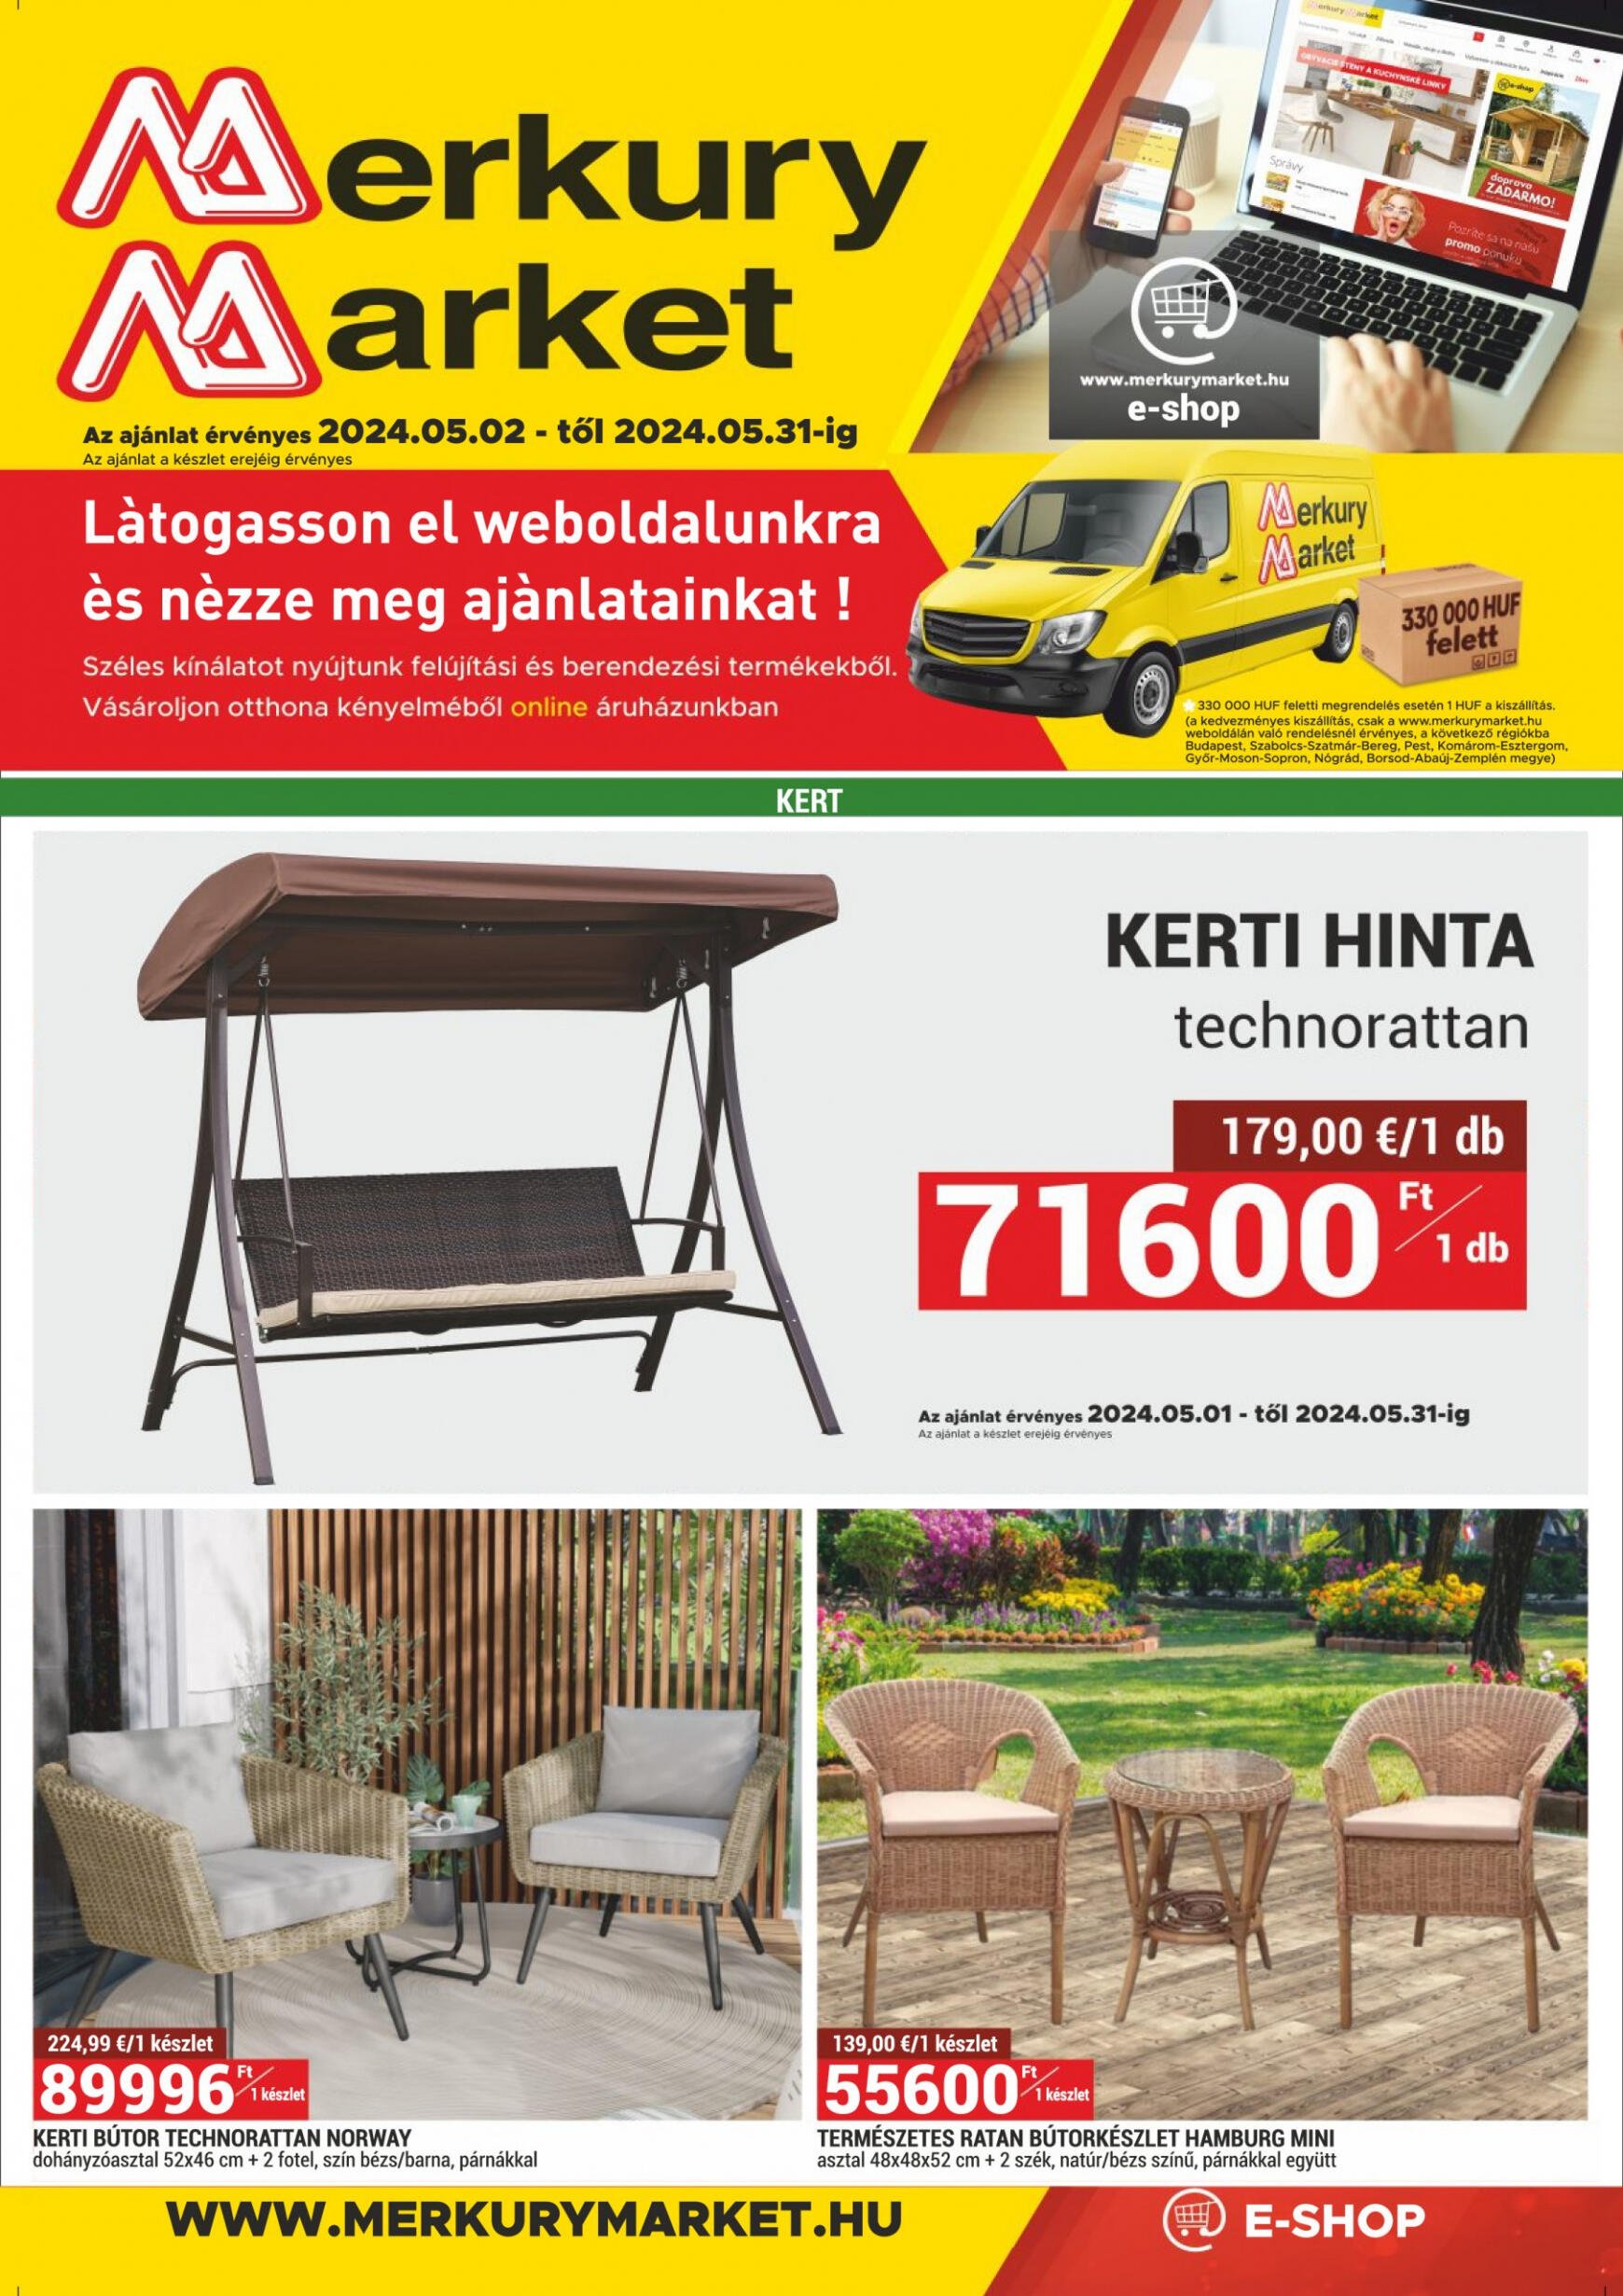 merkury-market - Aktuális újság MerkuryMarket 05.02. - 05.31. - page: 1